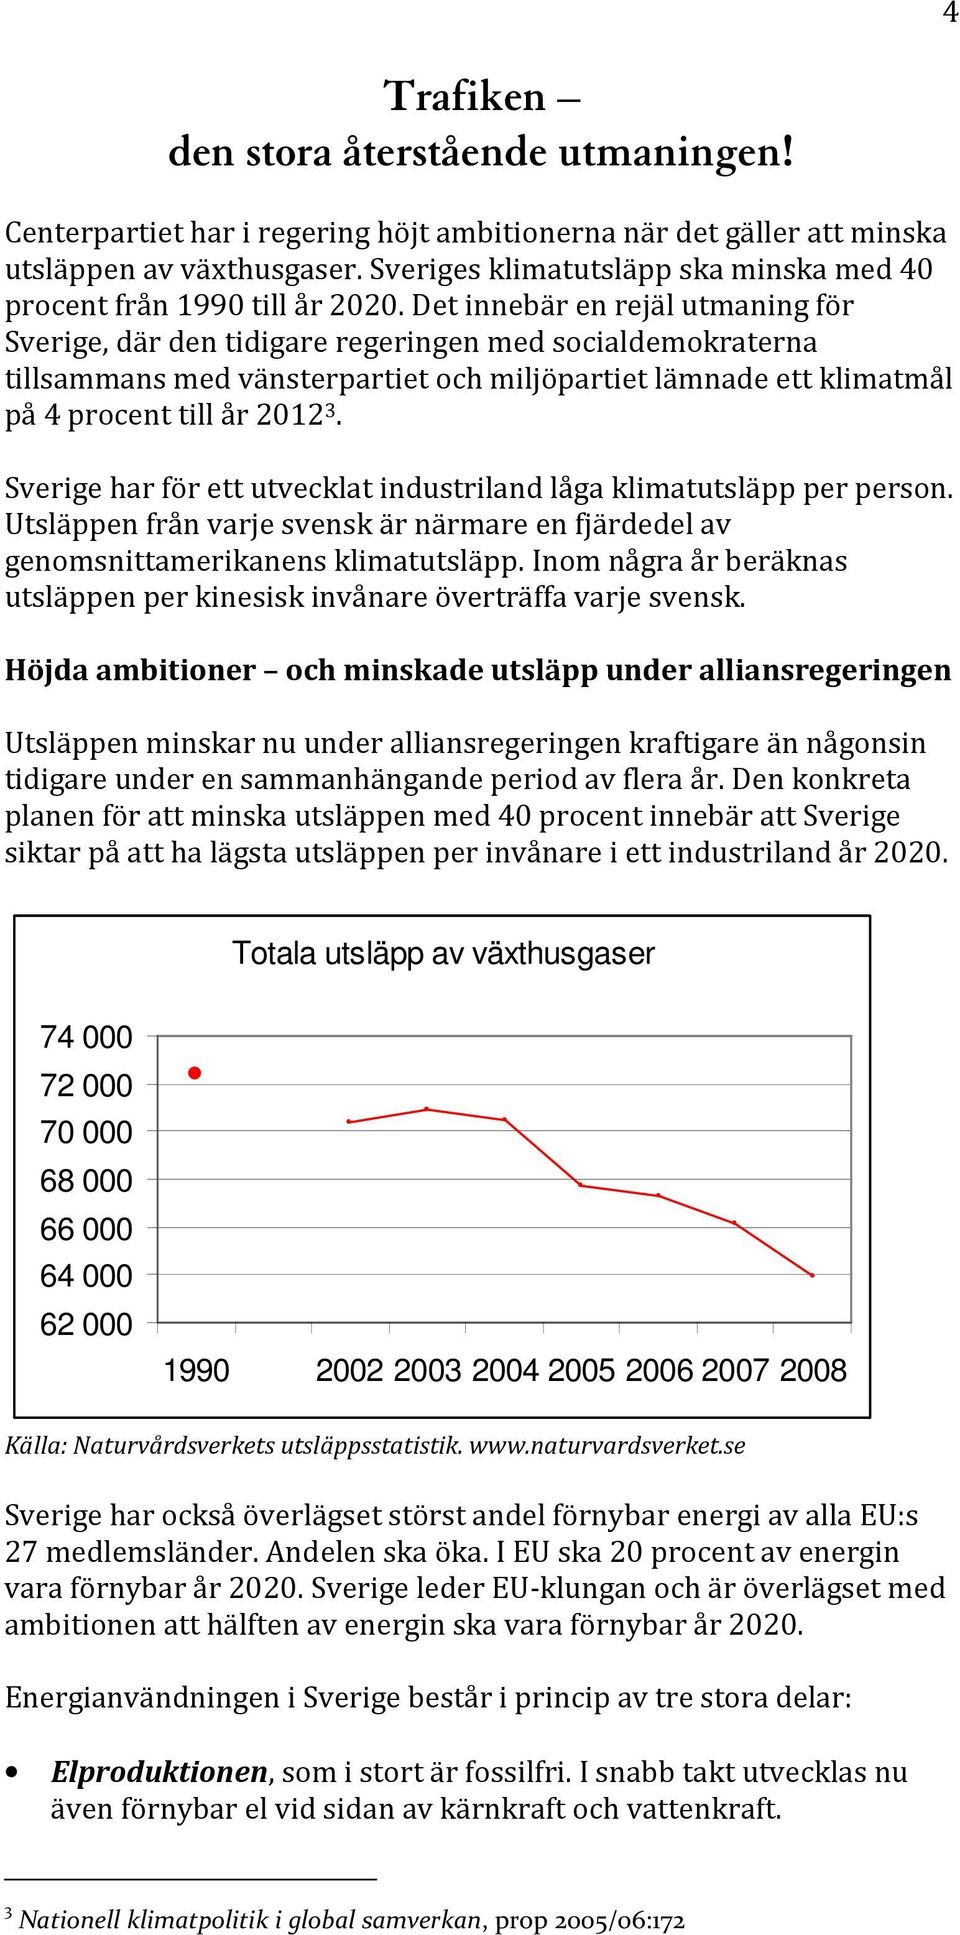 Det innebär en rejäl utmaning för Sverige, där den tidigare regeringen med socialdemokraterna tillsammans med vänsterpartiet och miljöpartiet lämnade ett klimatmål på 4 procent till år 2012 3.